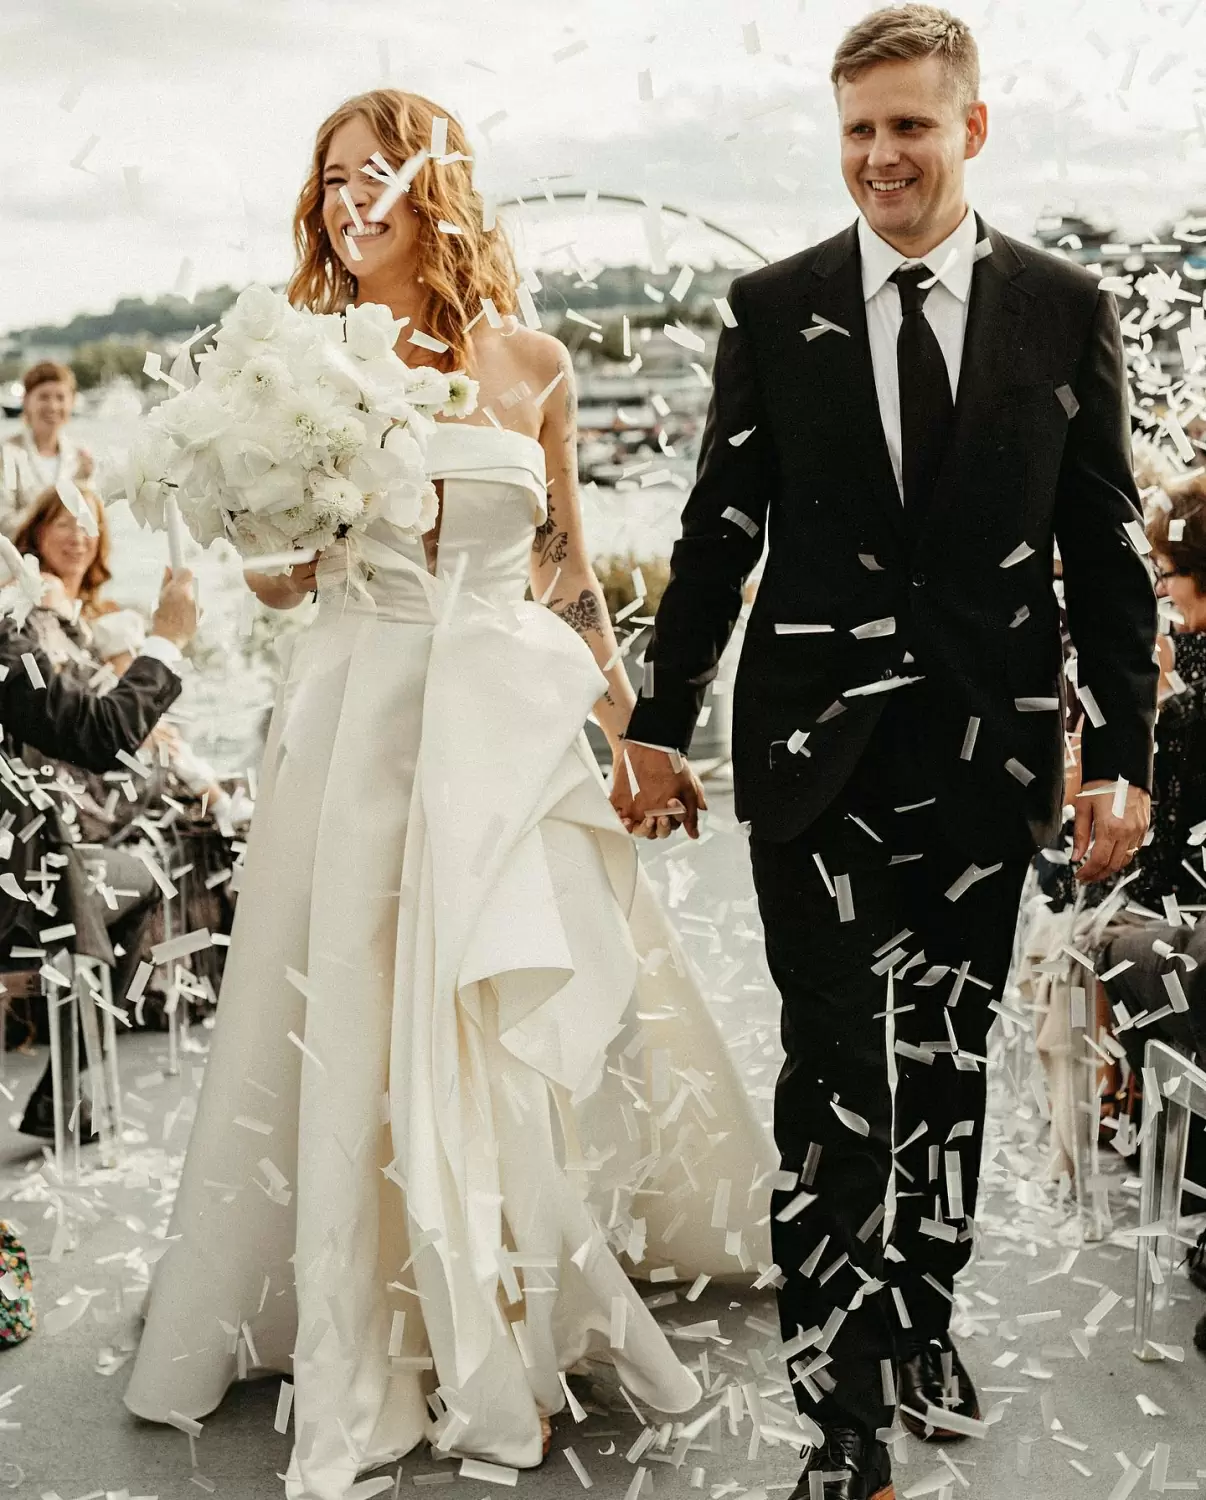 Фото Жених и невеста в белоснежном платье с белым букетом в руках идут среди гостей на выездную церемонию и их забрасывают белыми бумажками с пожеланиями.